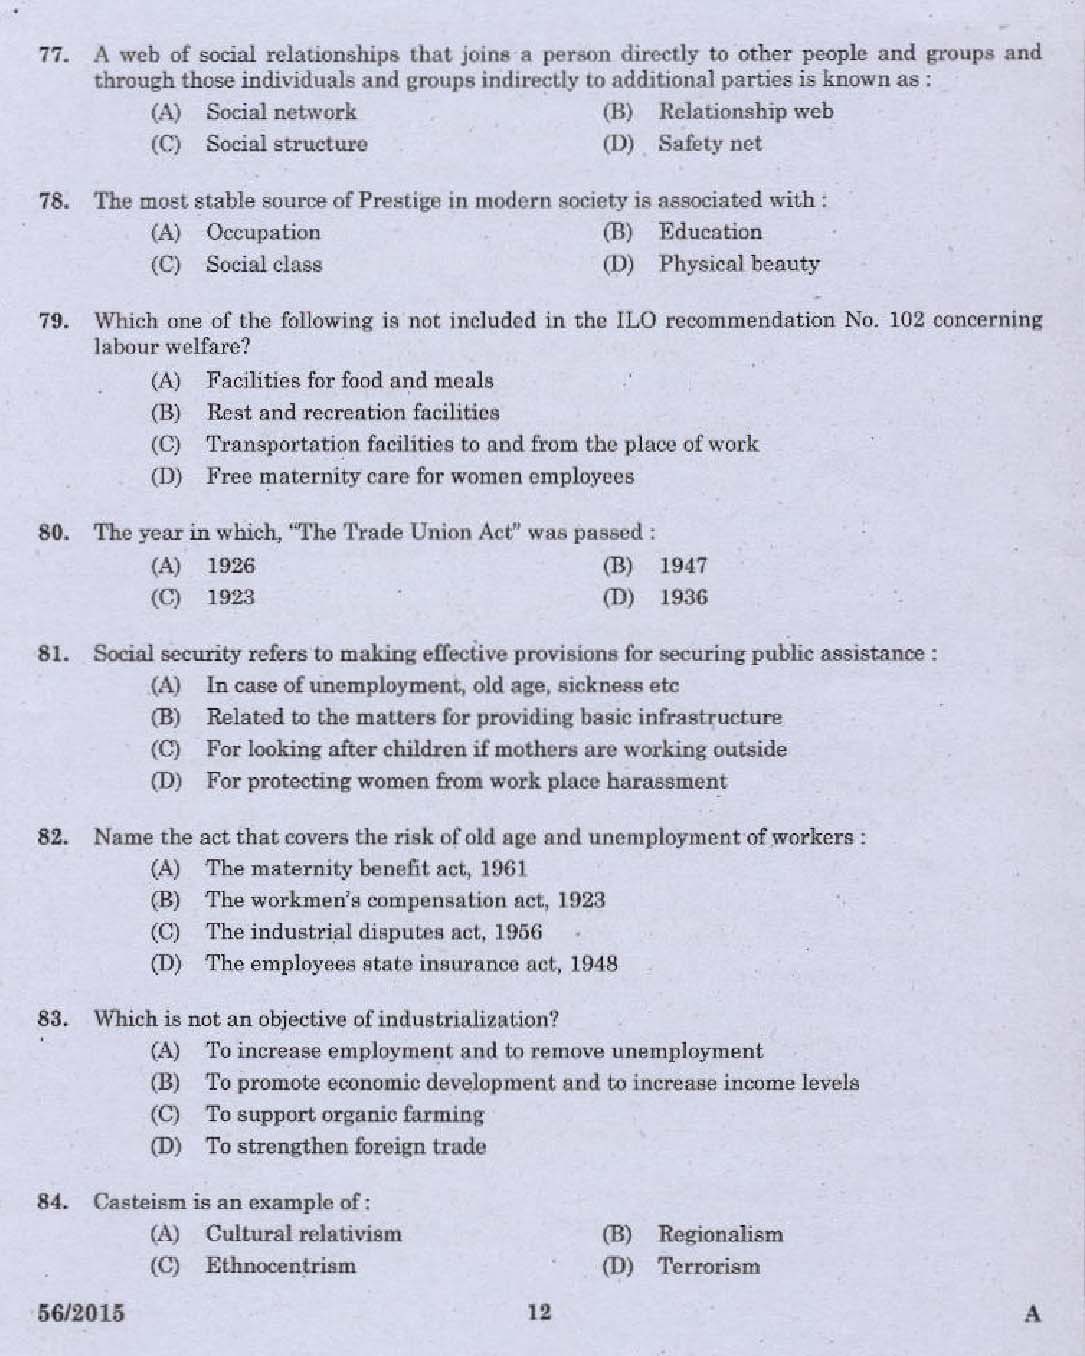 KPSC Welfare Officer Exam 2015 Code 562015 10